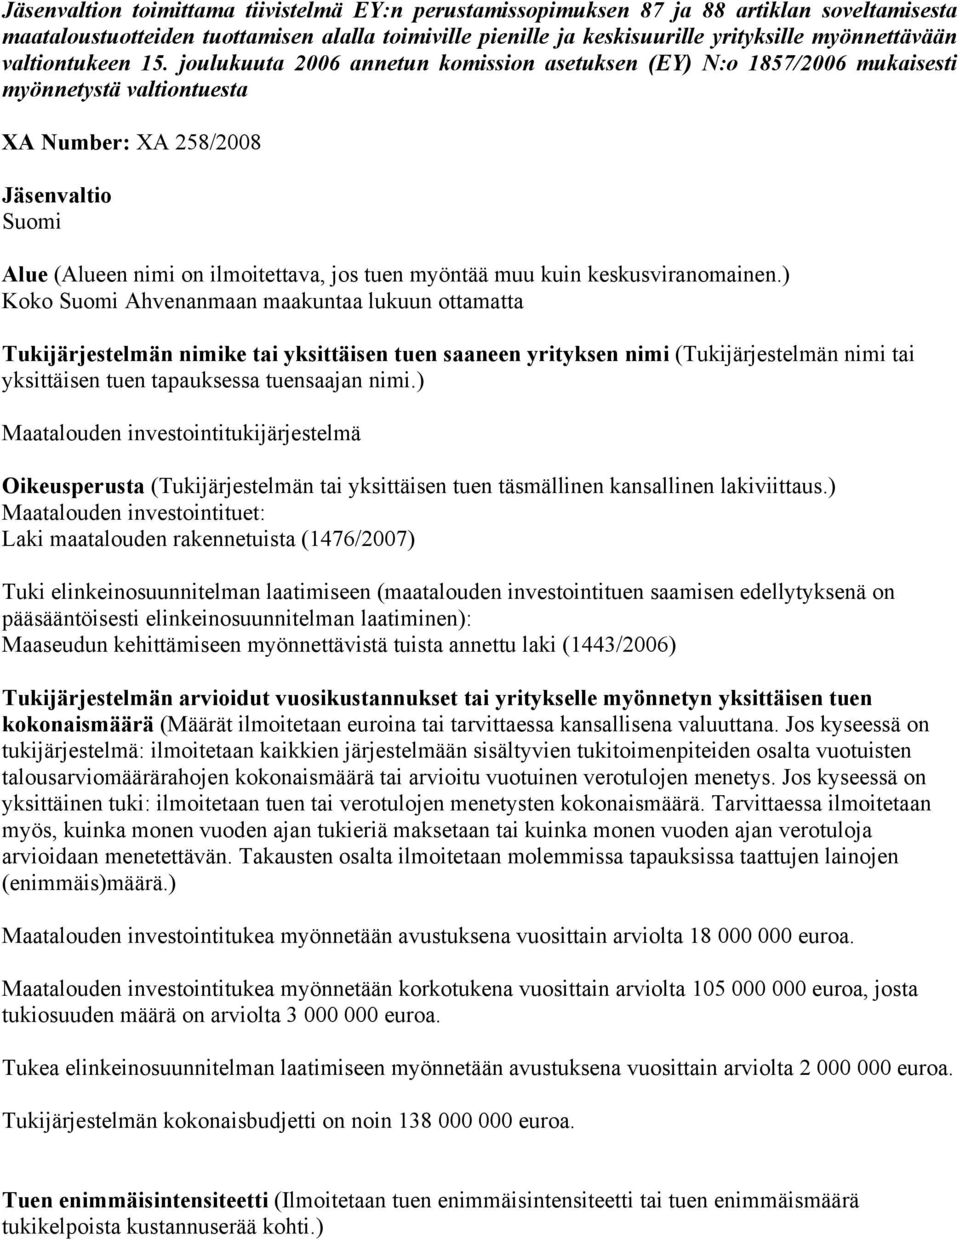 joulukuuta 2006 annetun komission asetuksen (EY) N:o 1857/2006 mukaisesti myönnetystä valtiontuesta XA Number: XA 258/2008 Jäsenvaltio Suomi Alue (Alueen nimi on ilmoitettava, jos tuen myöntää muu